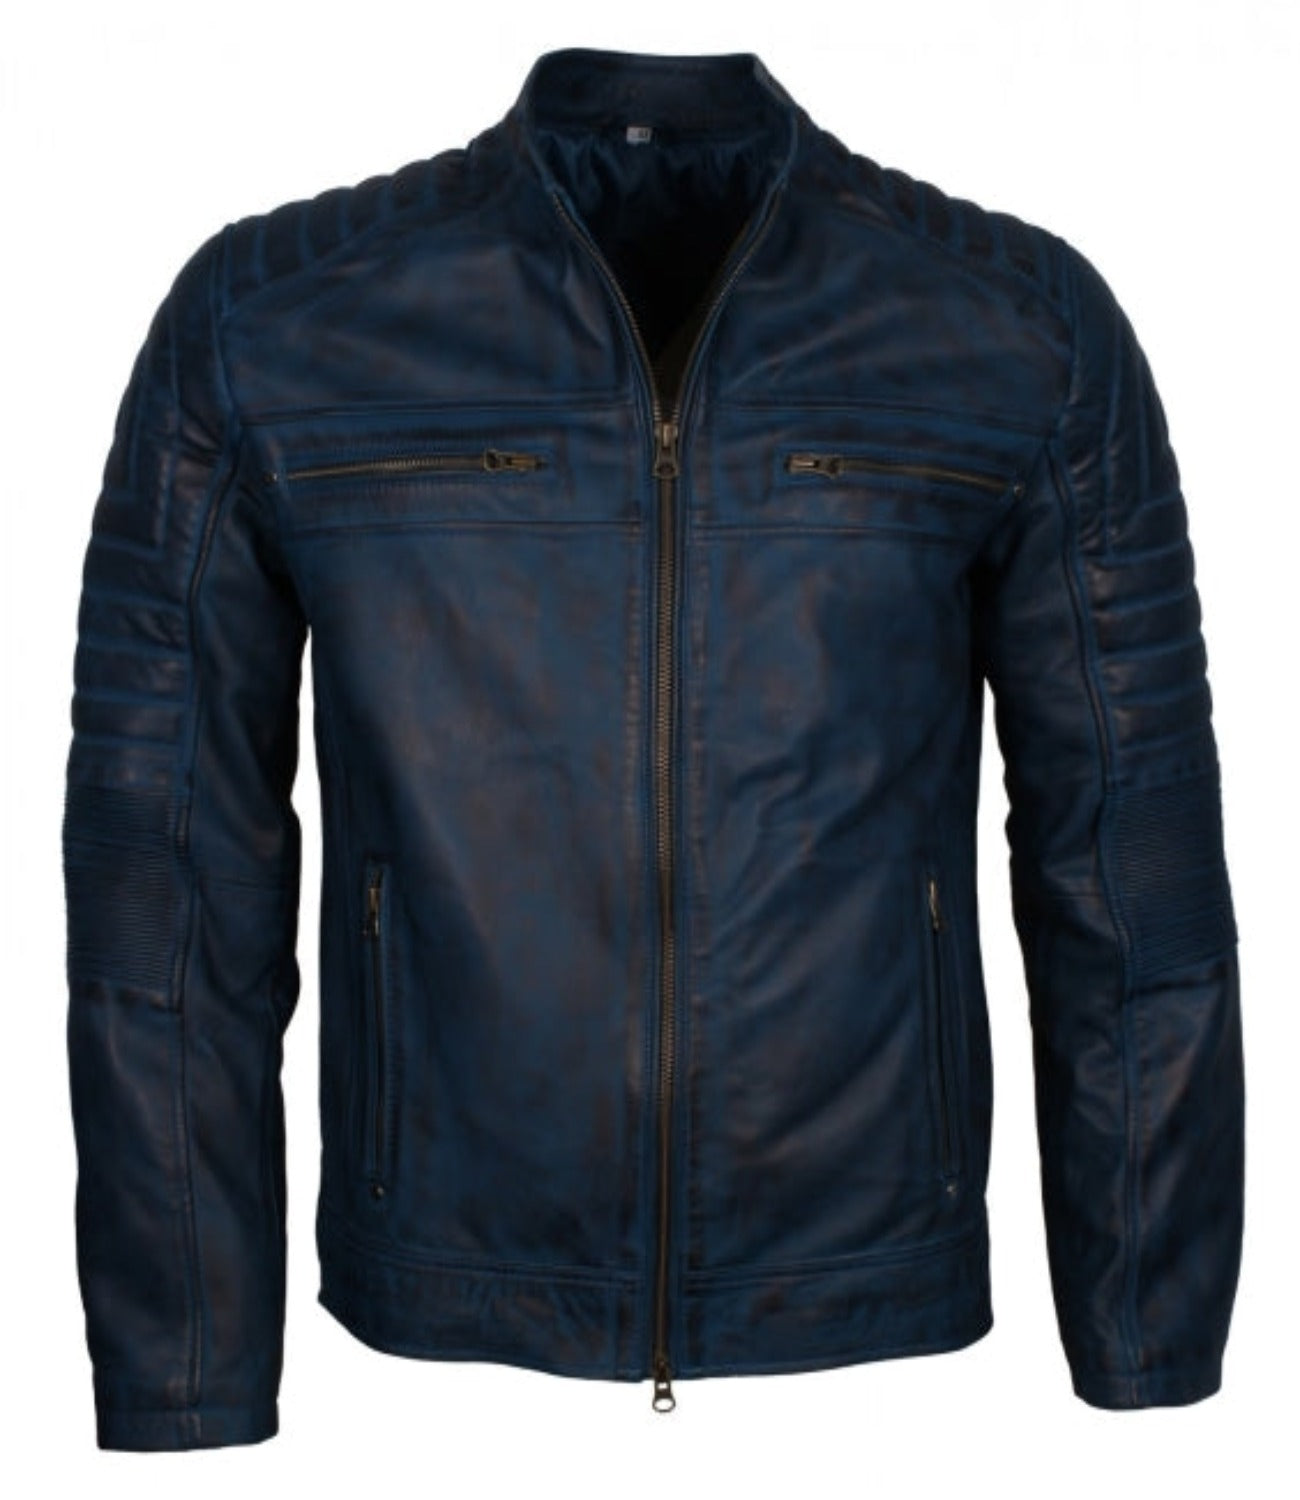 Men’s Blue Leather Cafe Racer Biker Jacket